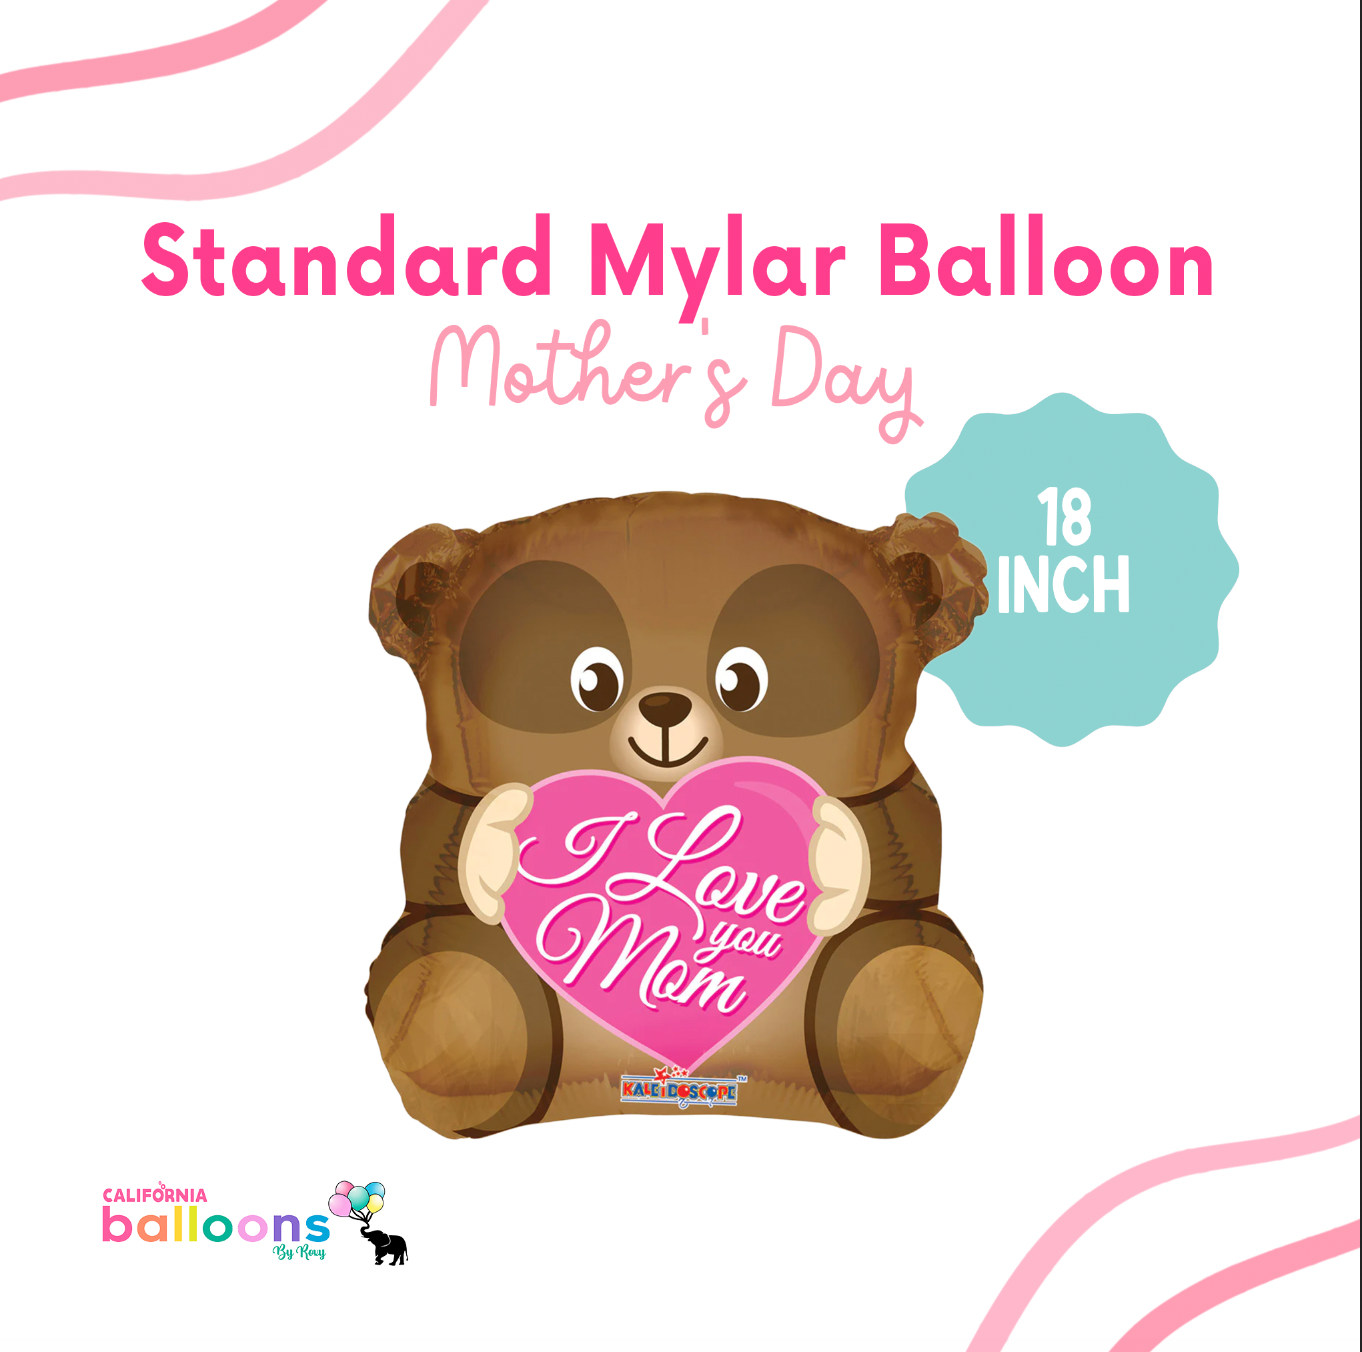 "I love you, Mom" Bear Shape Mylar Balloon - 18 INCH